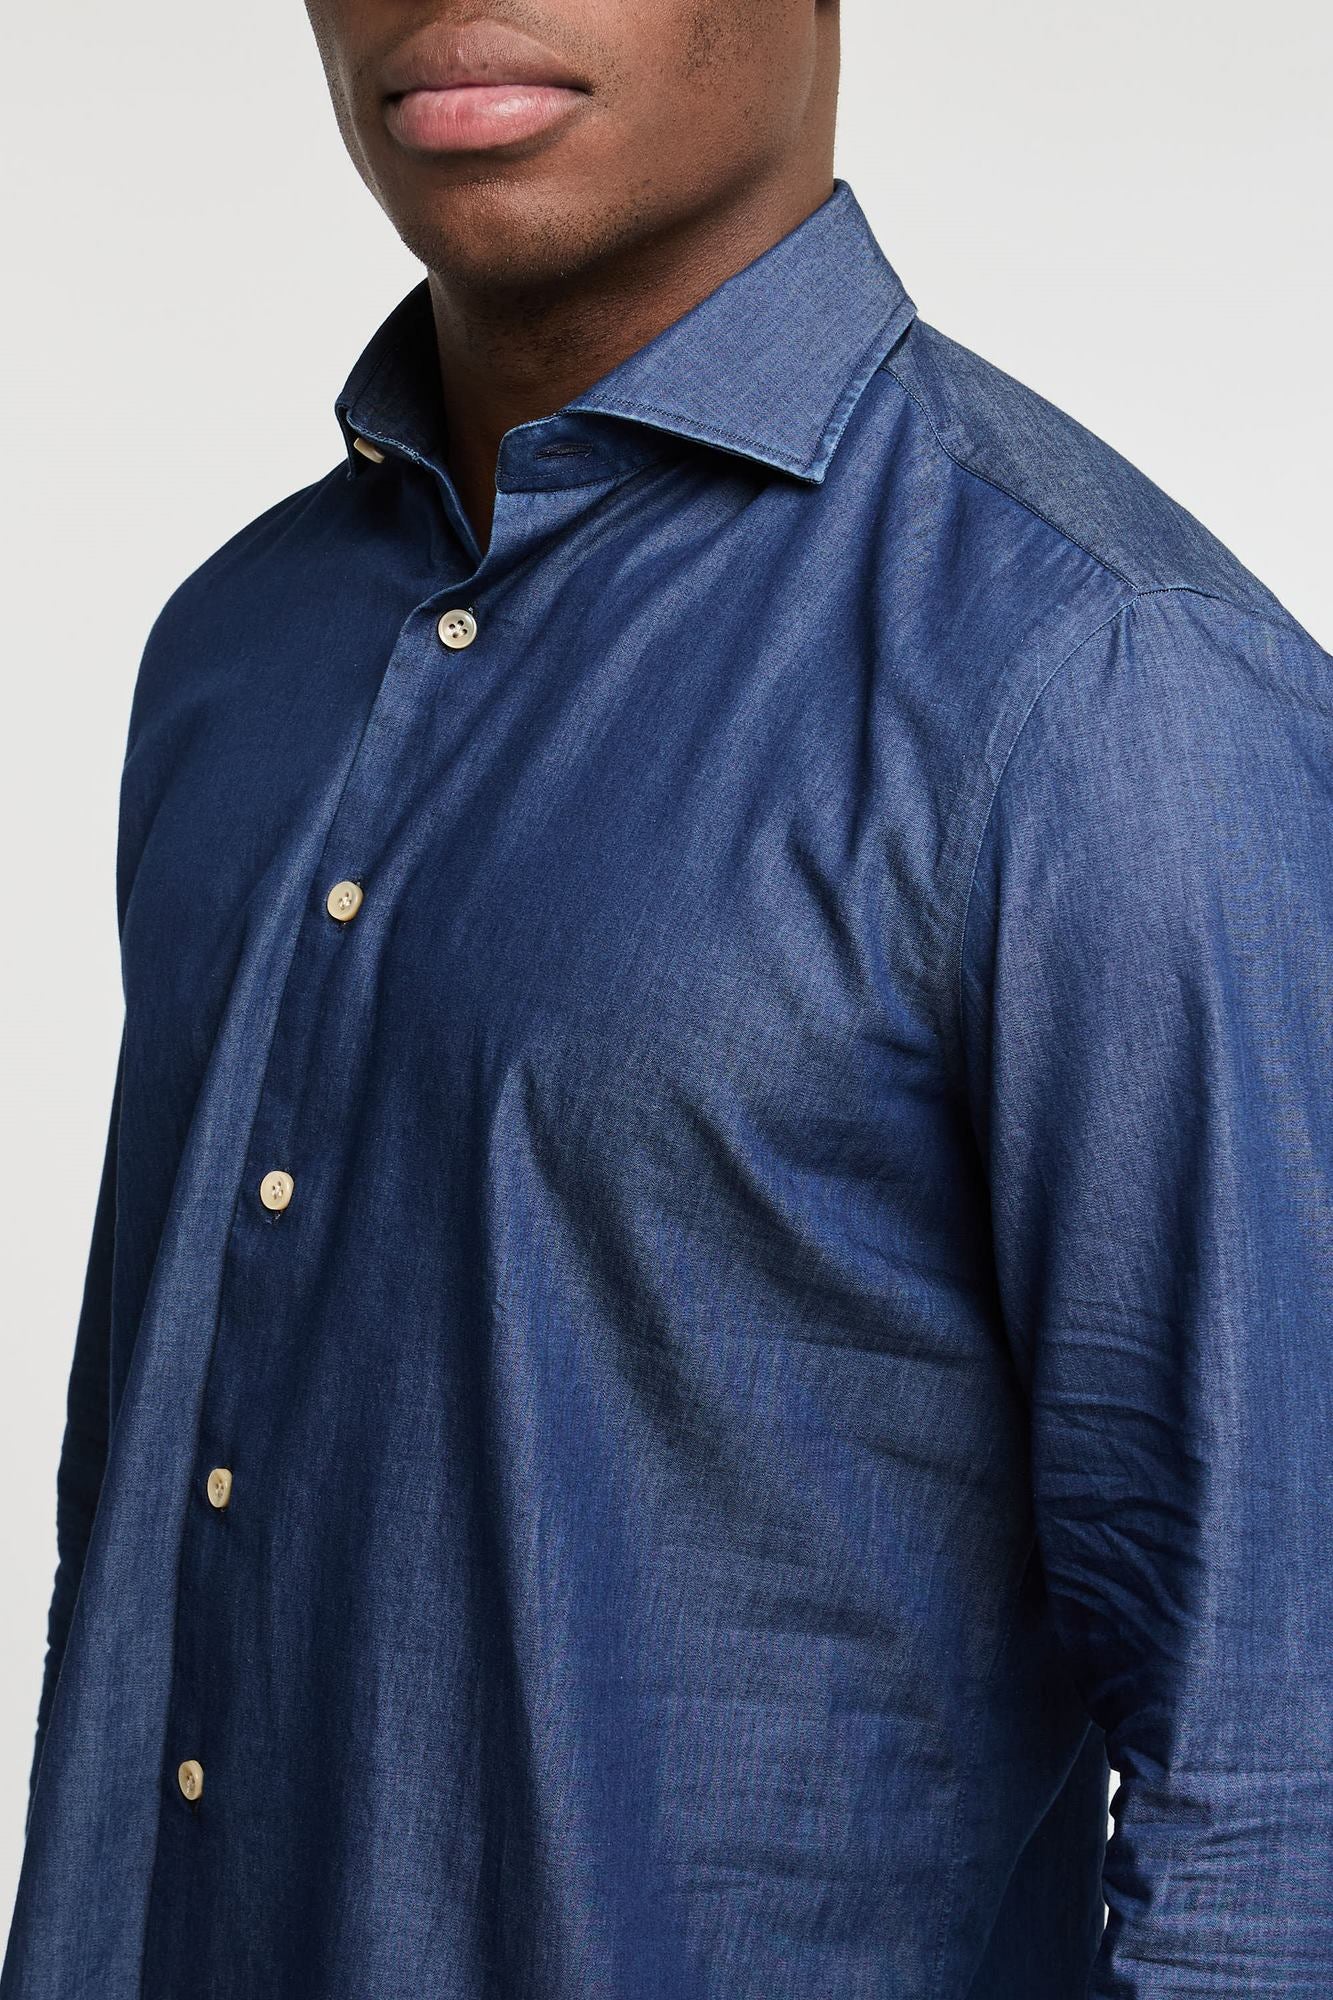 Truzzi Denim Cotton Shirt Dark Blue Color-2